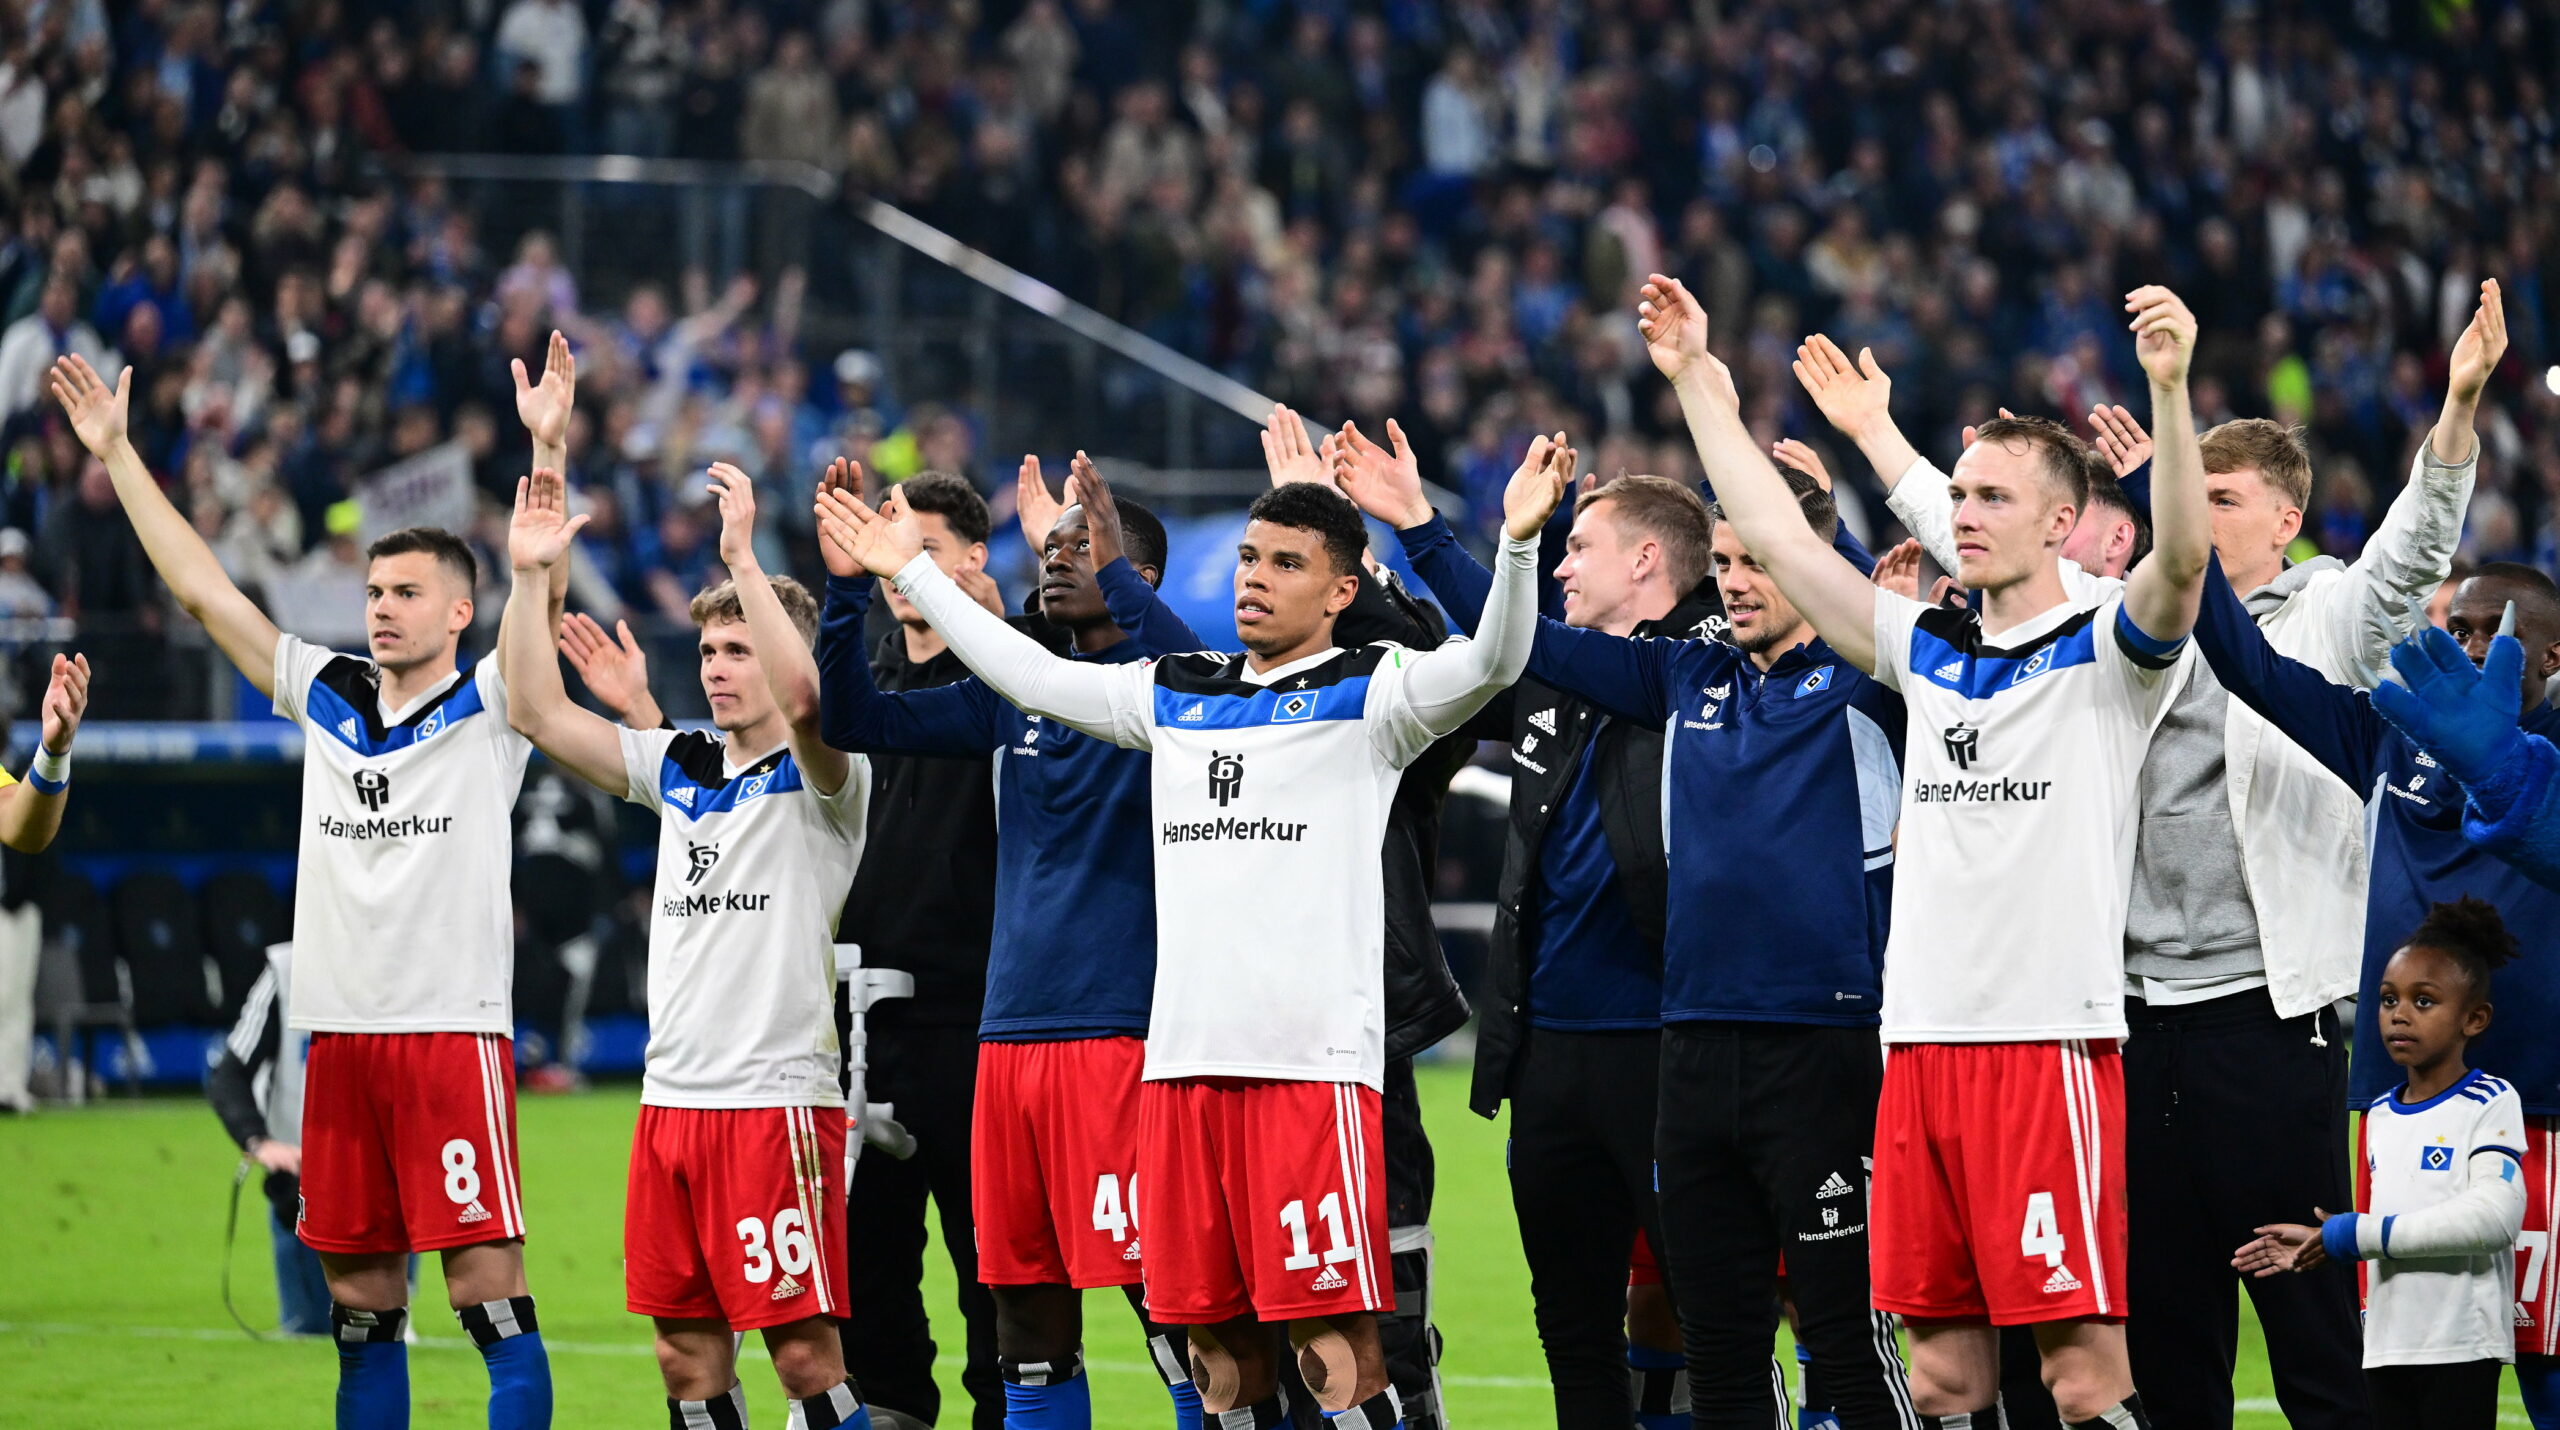 Ovationen nach dem Sieg: Die HSV-Profis lassen sich von ihren Fans feiern.